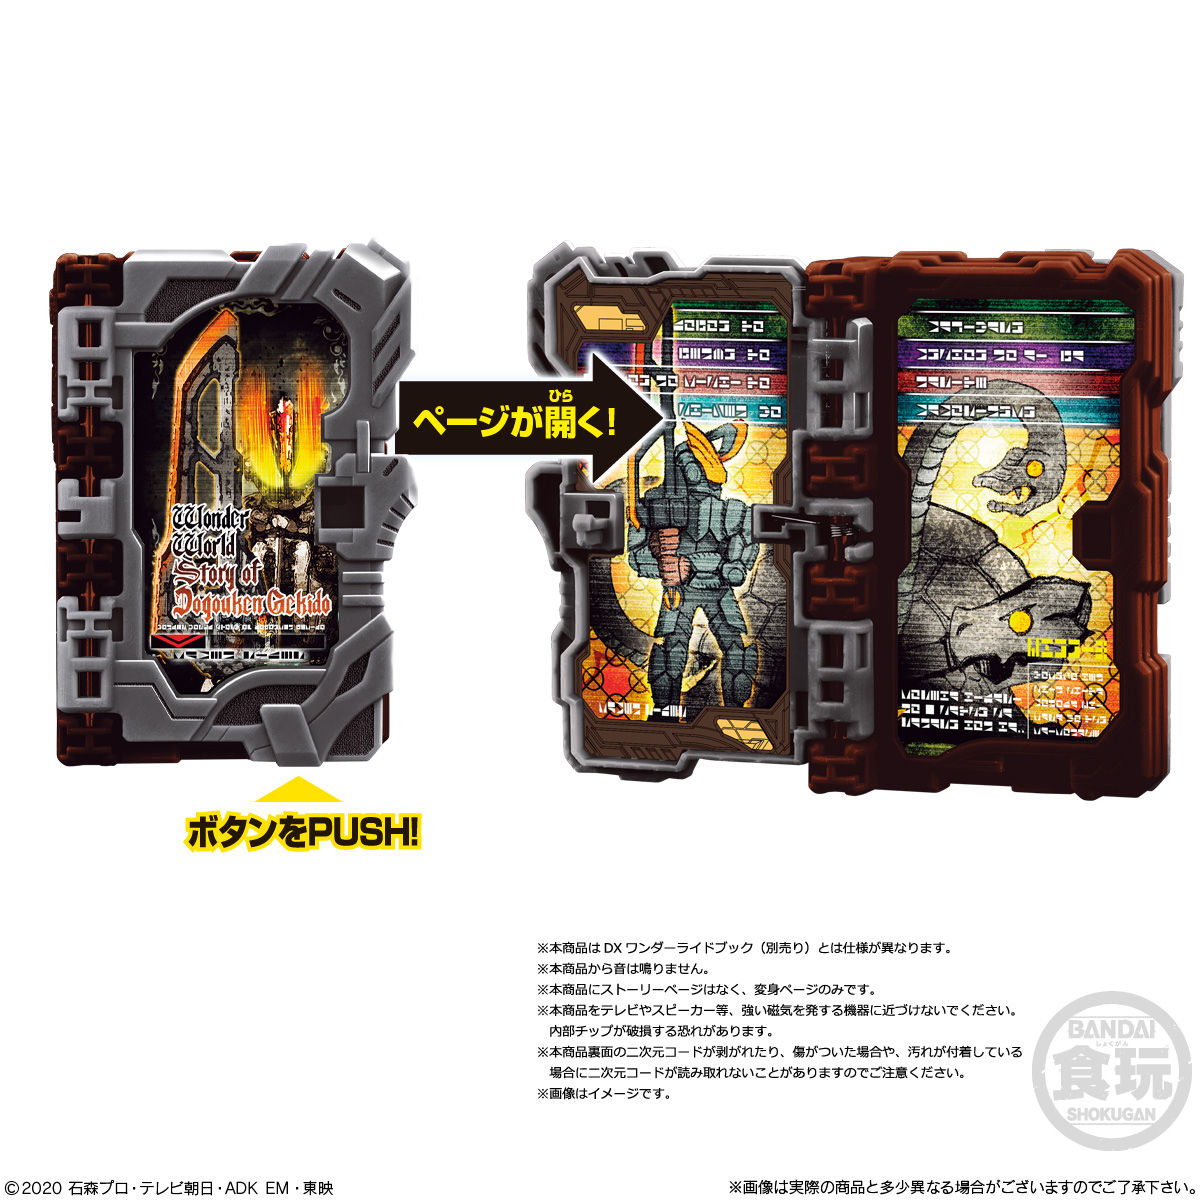 【食玩】仮面ライダーセイバー『コレクタブルワンダーライドブック SG07』8個入りBOX-008